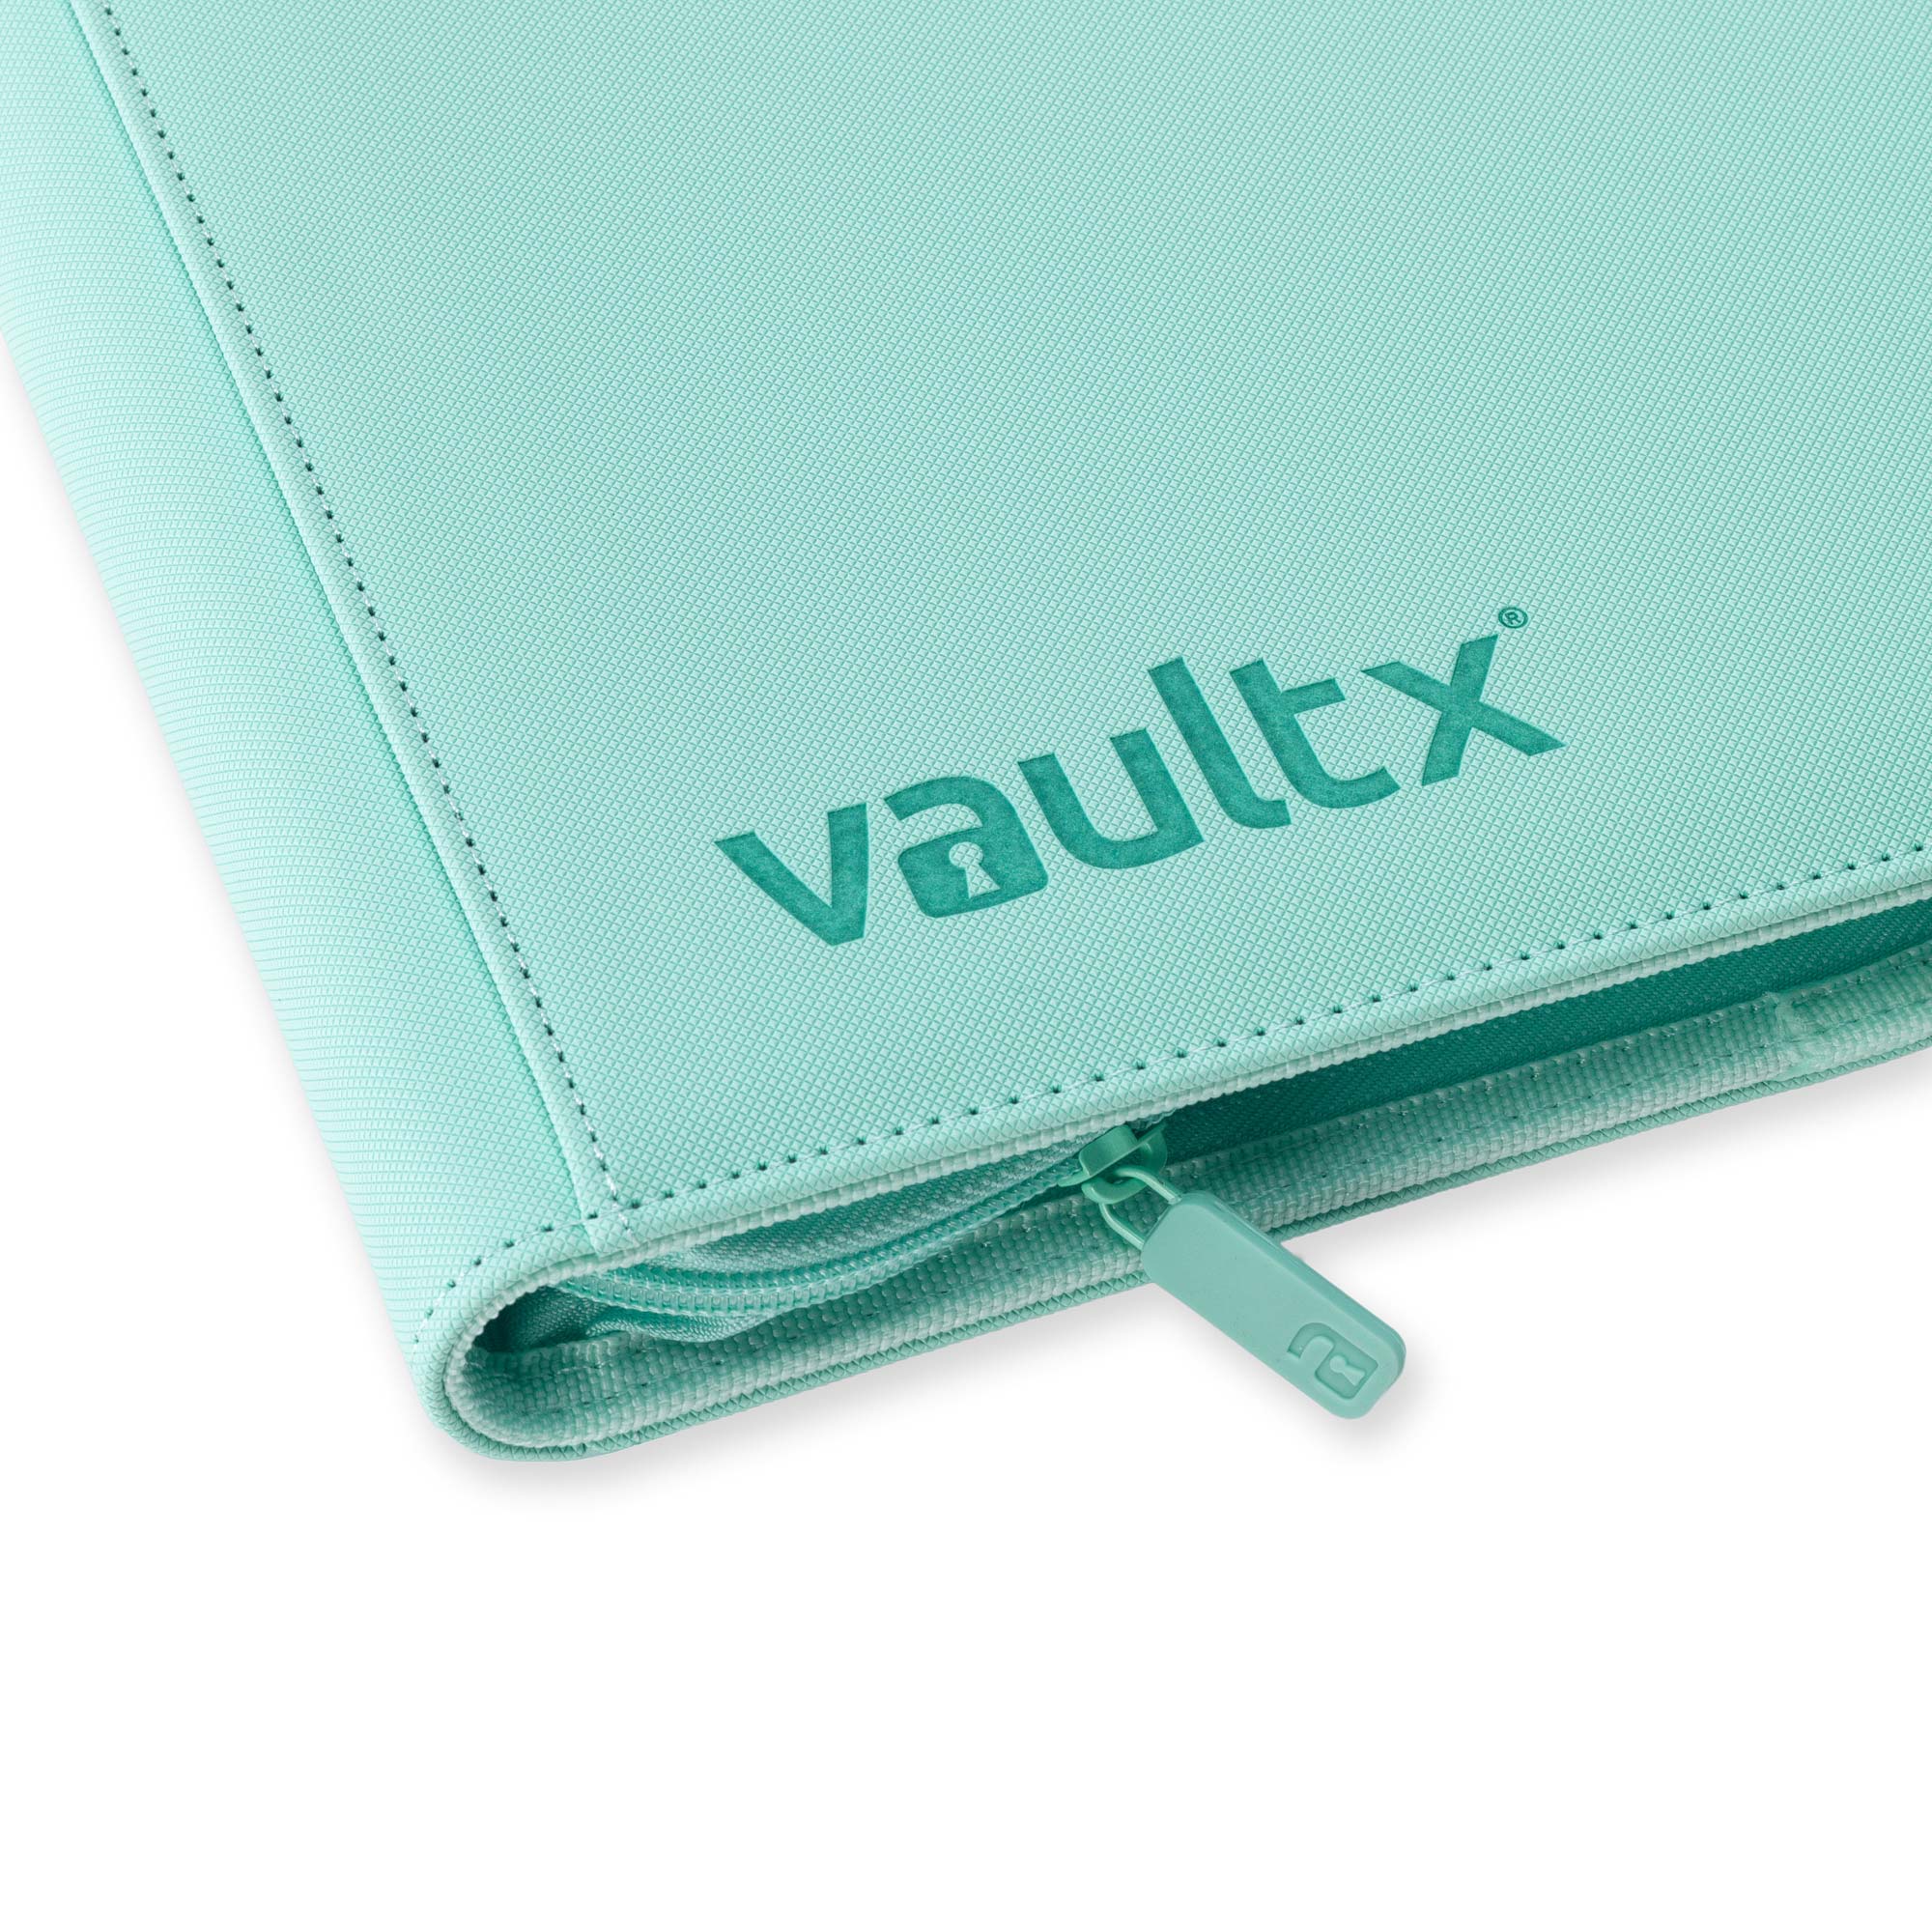 12-Pocket Exo-Tec® Zip Binder Mint Green – Vault X UK